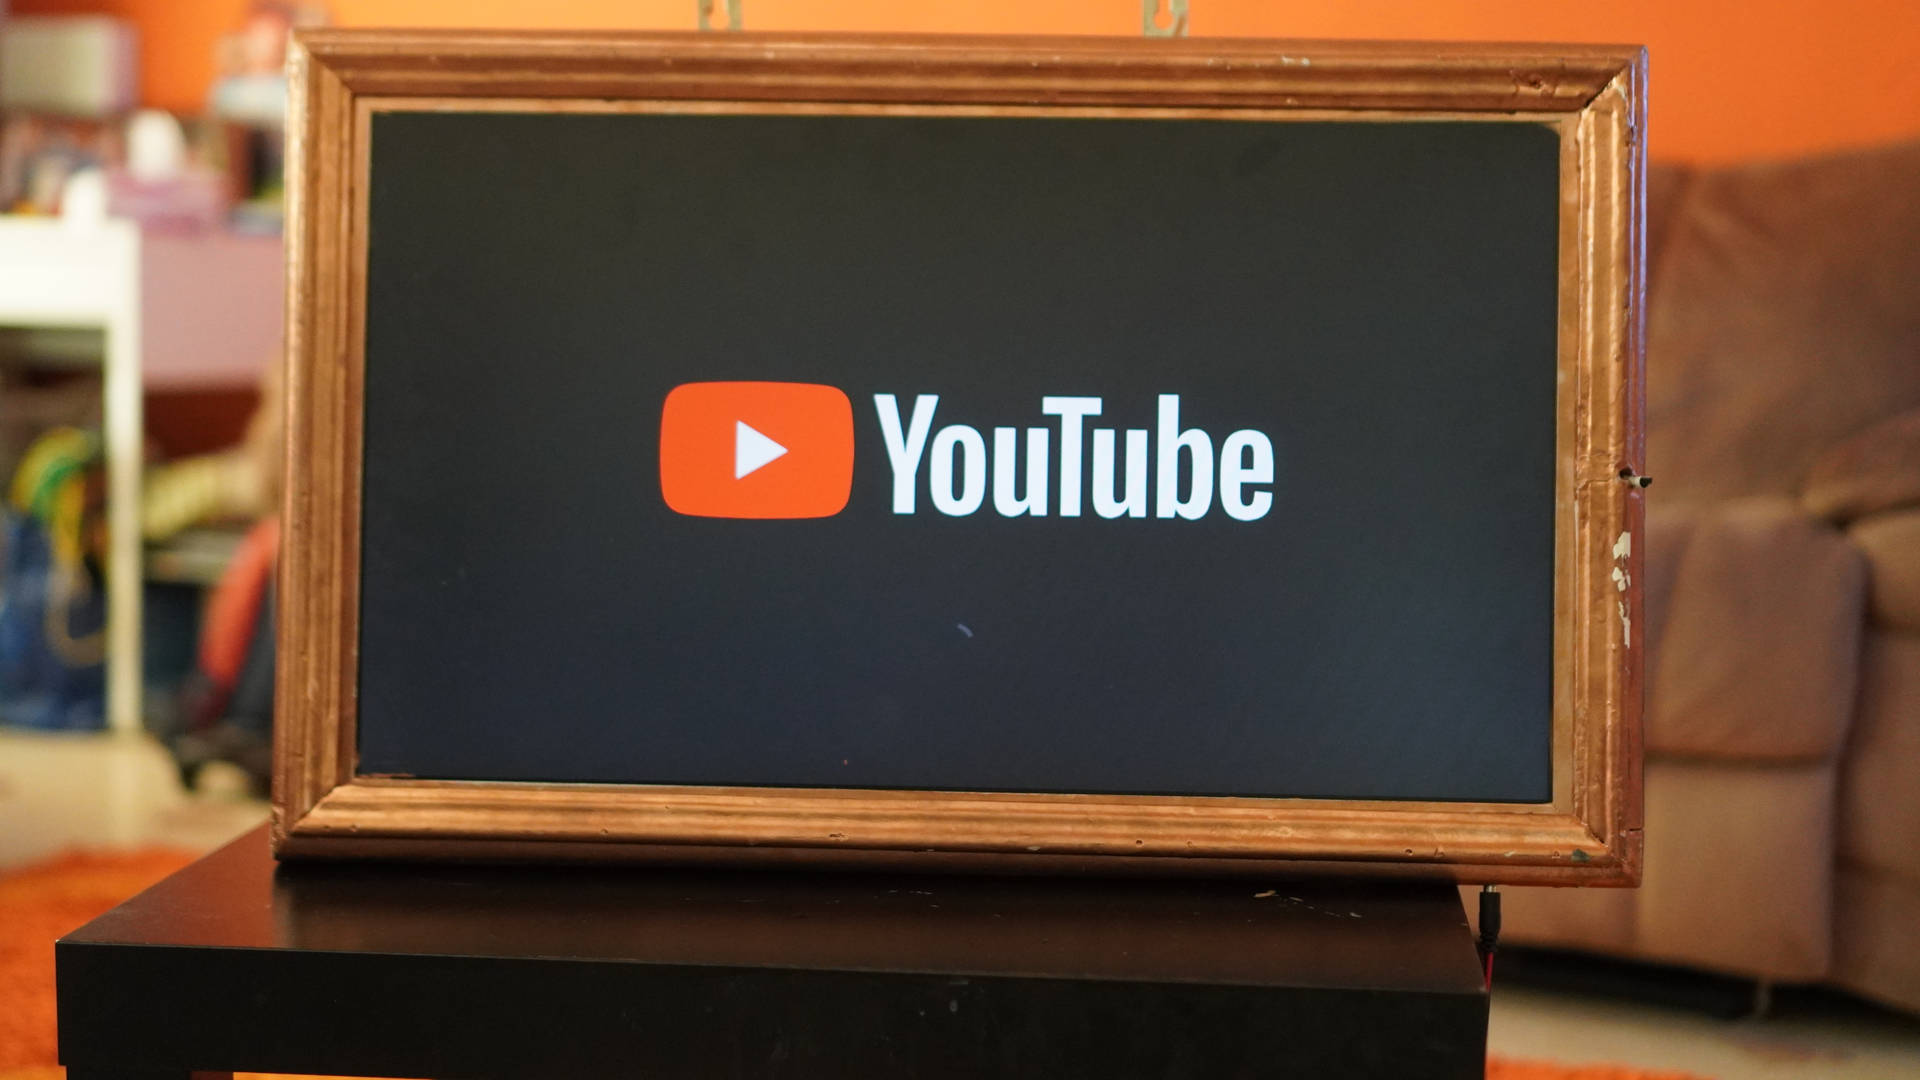 Logotipode Youtube En Un Pizarrón Enmarcado. Fondo de pantalla